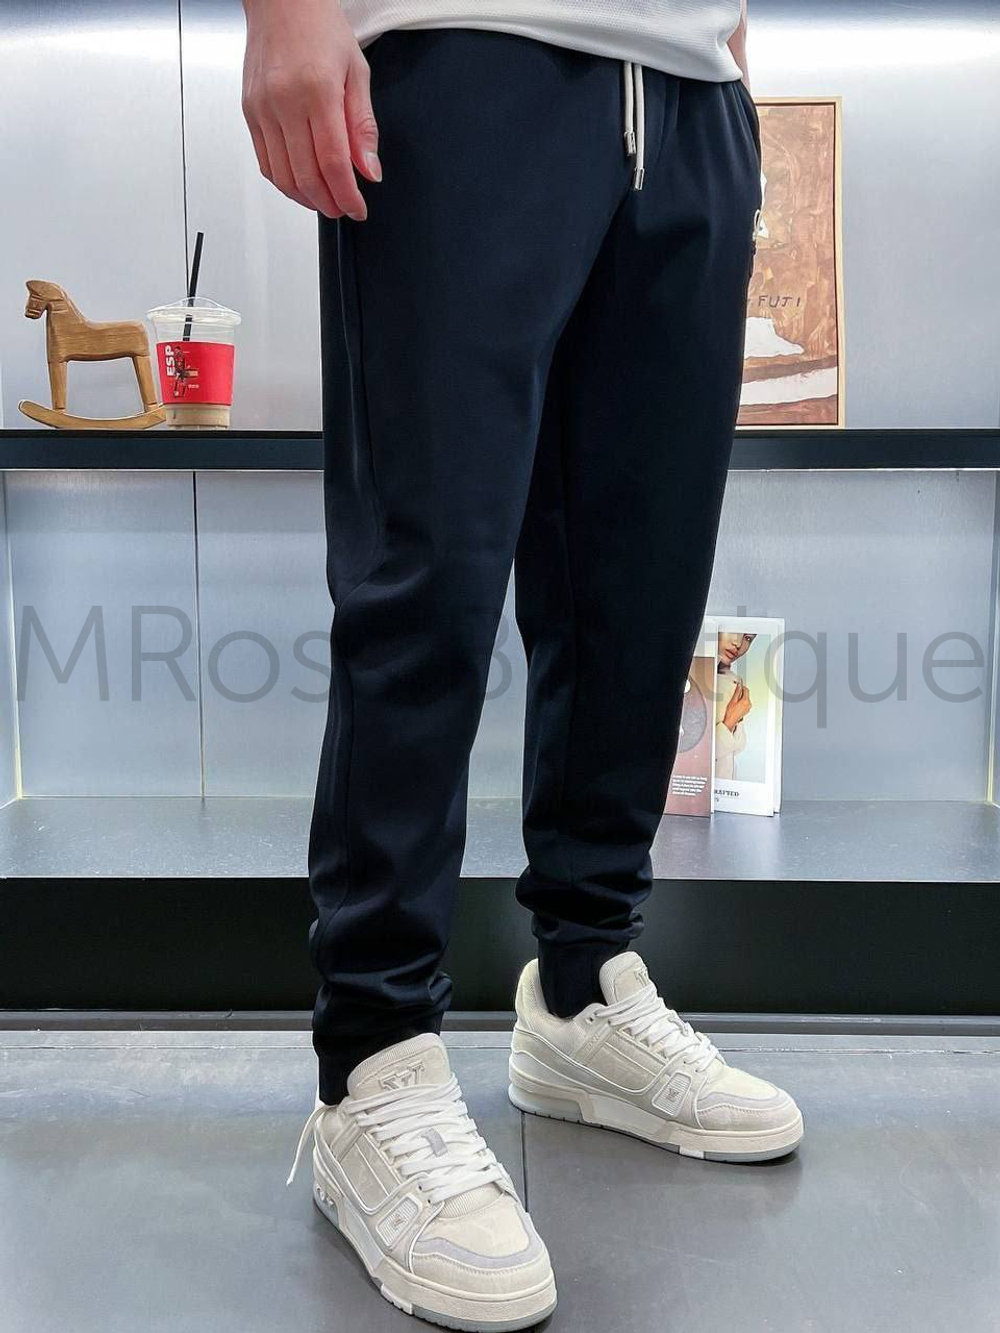 Мужские спортивные штаны Loewe с вышивкой и кожаным карманом